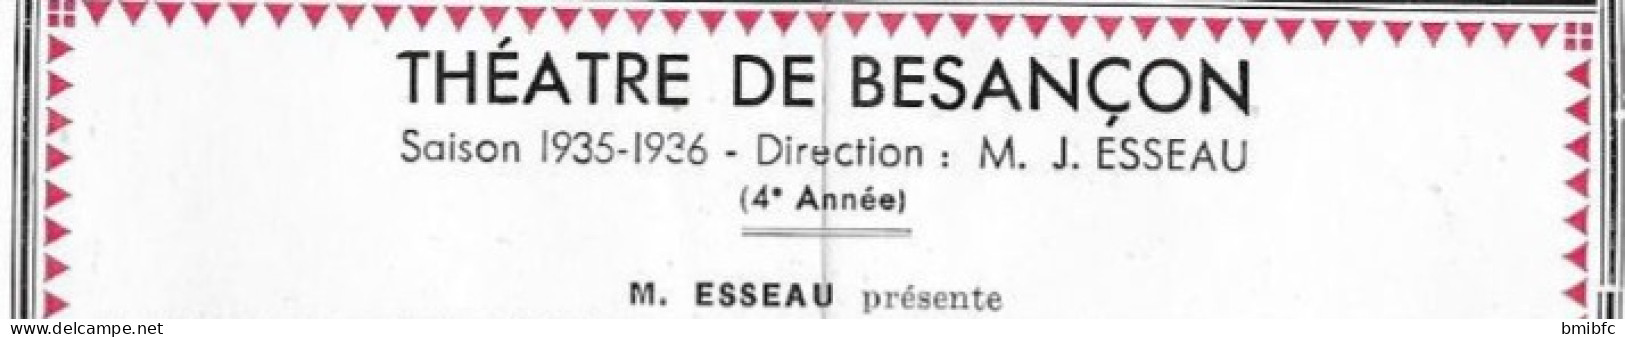 Saison 1935-1936 - Théâtre Municipal de BESANÇON - Programme - Prix 1 Fr. 50  - (Nombreuses publicités Commerciales)